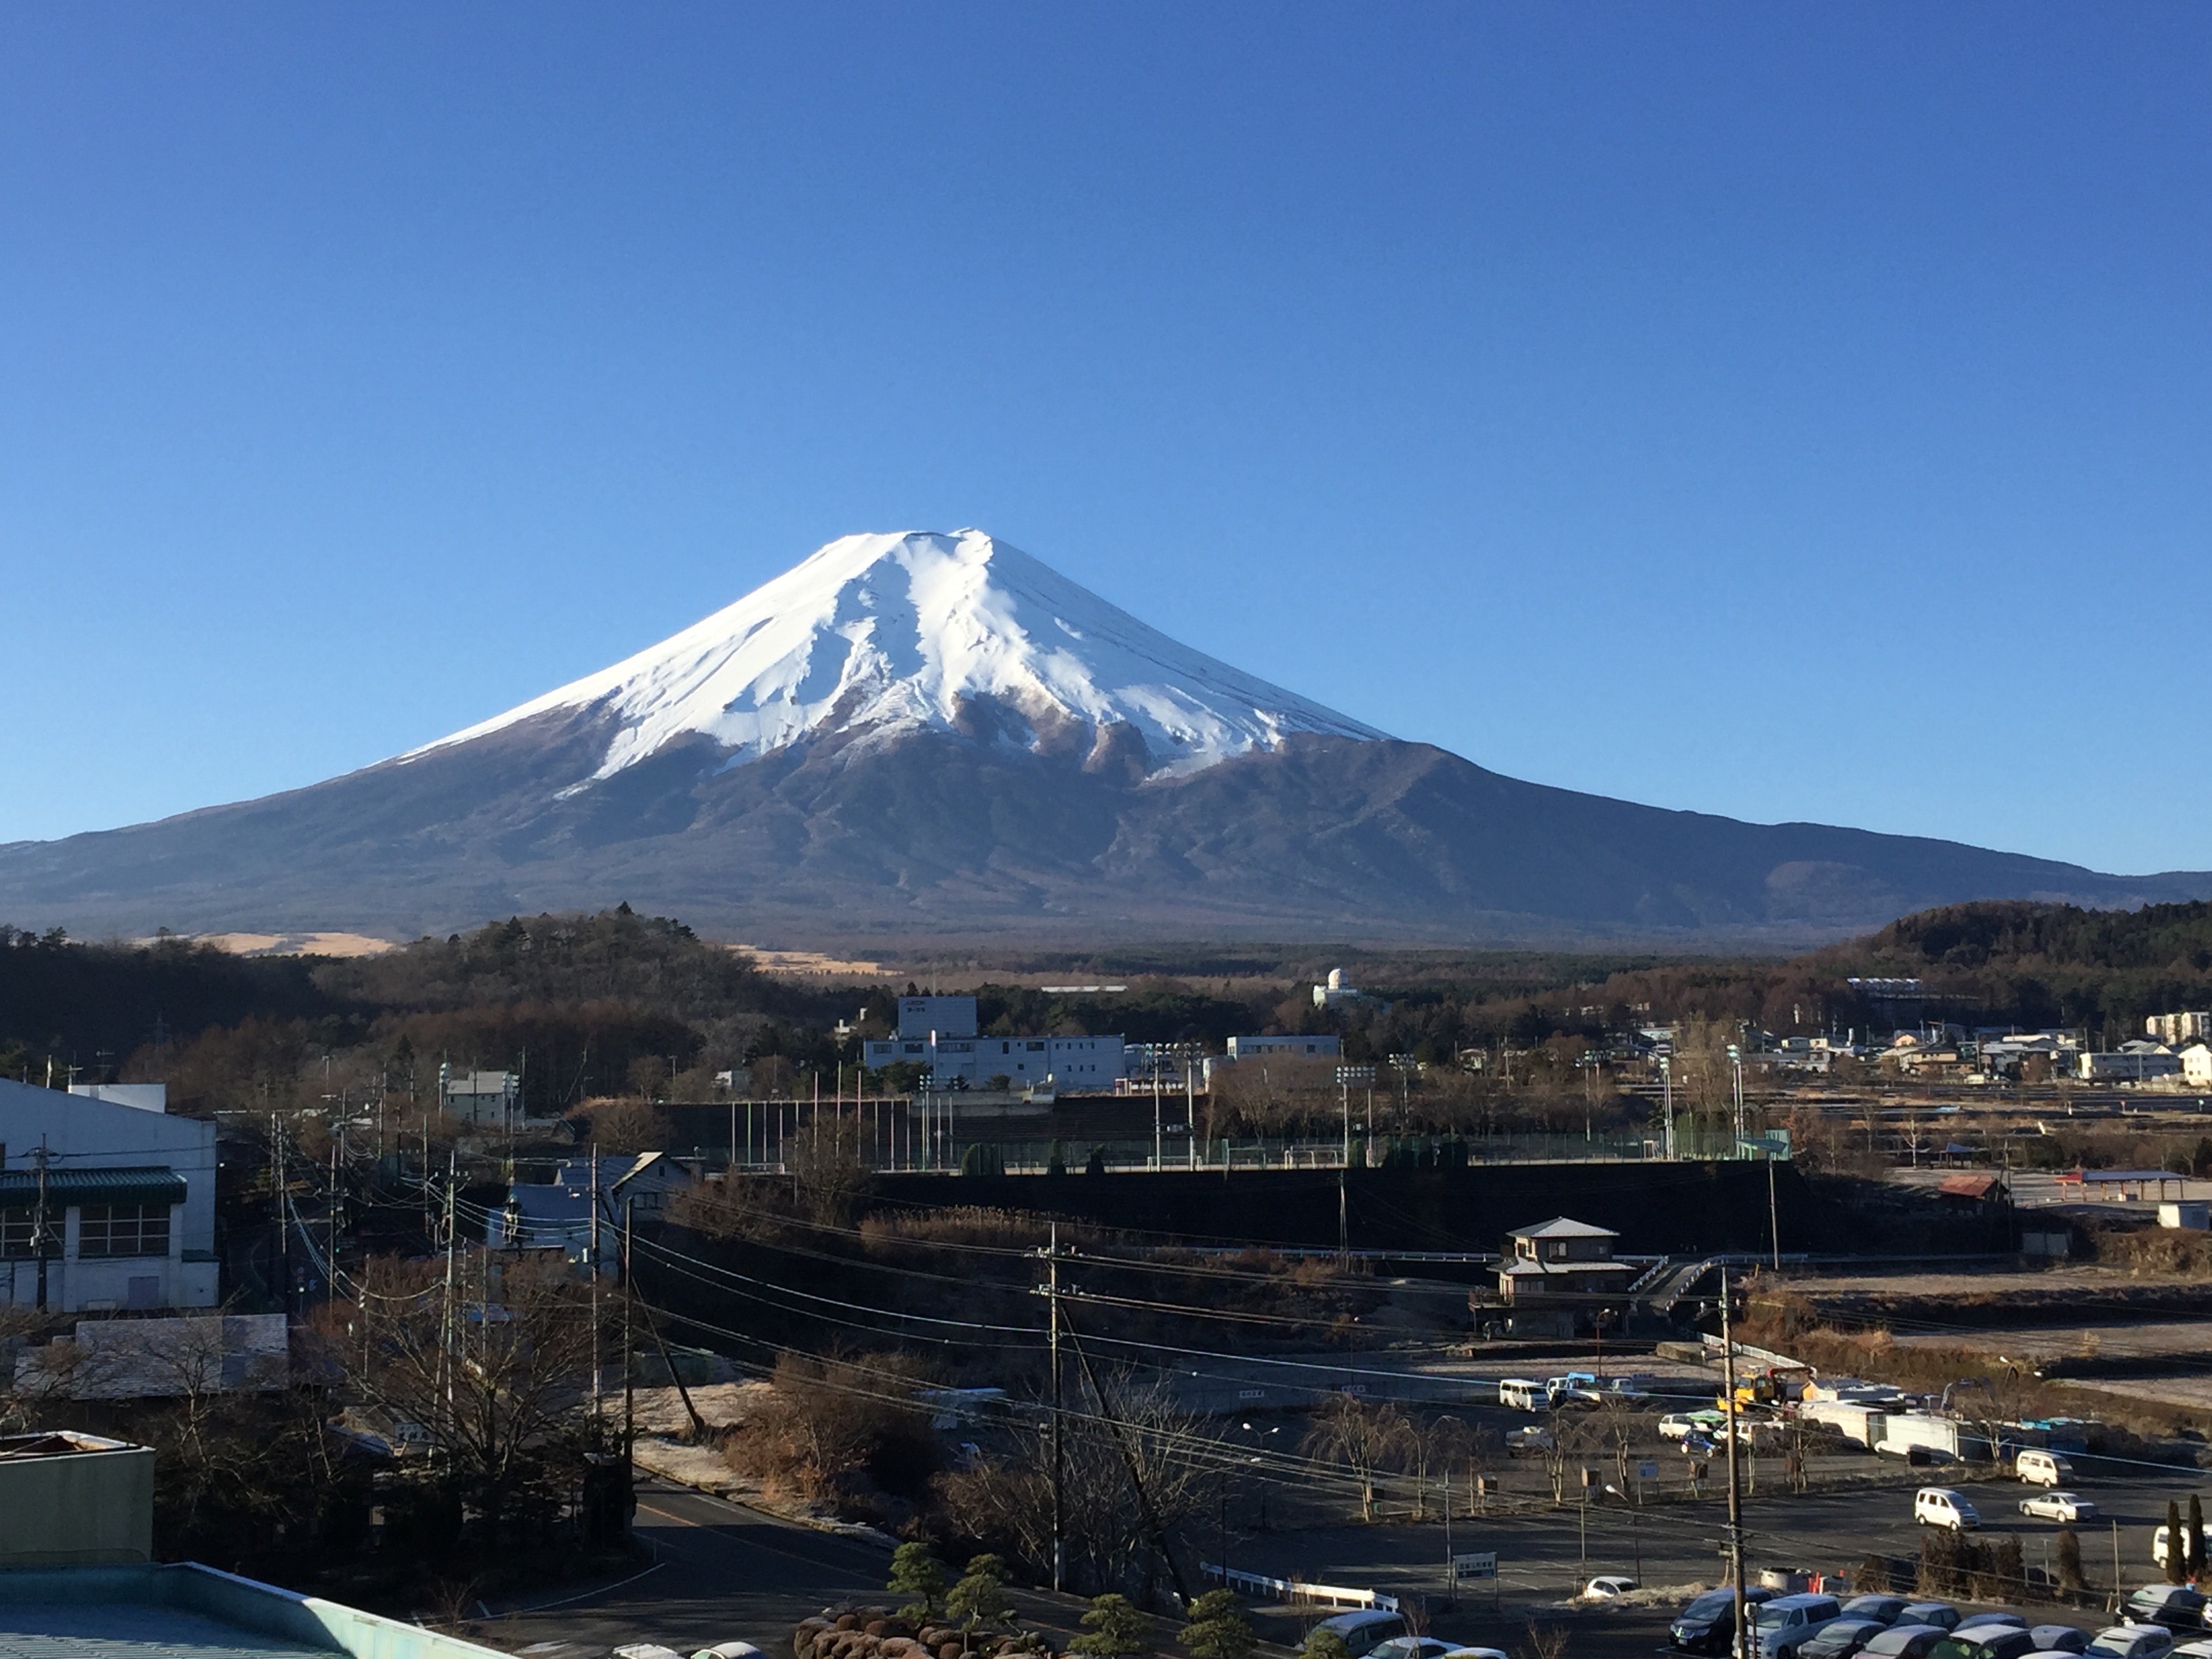 霊峰富士山の姿を眺めながら、夜明けを迎えました。